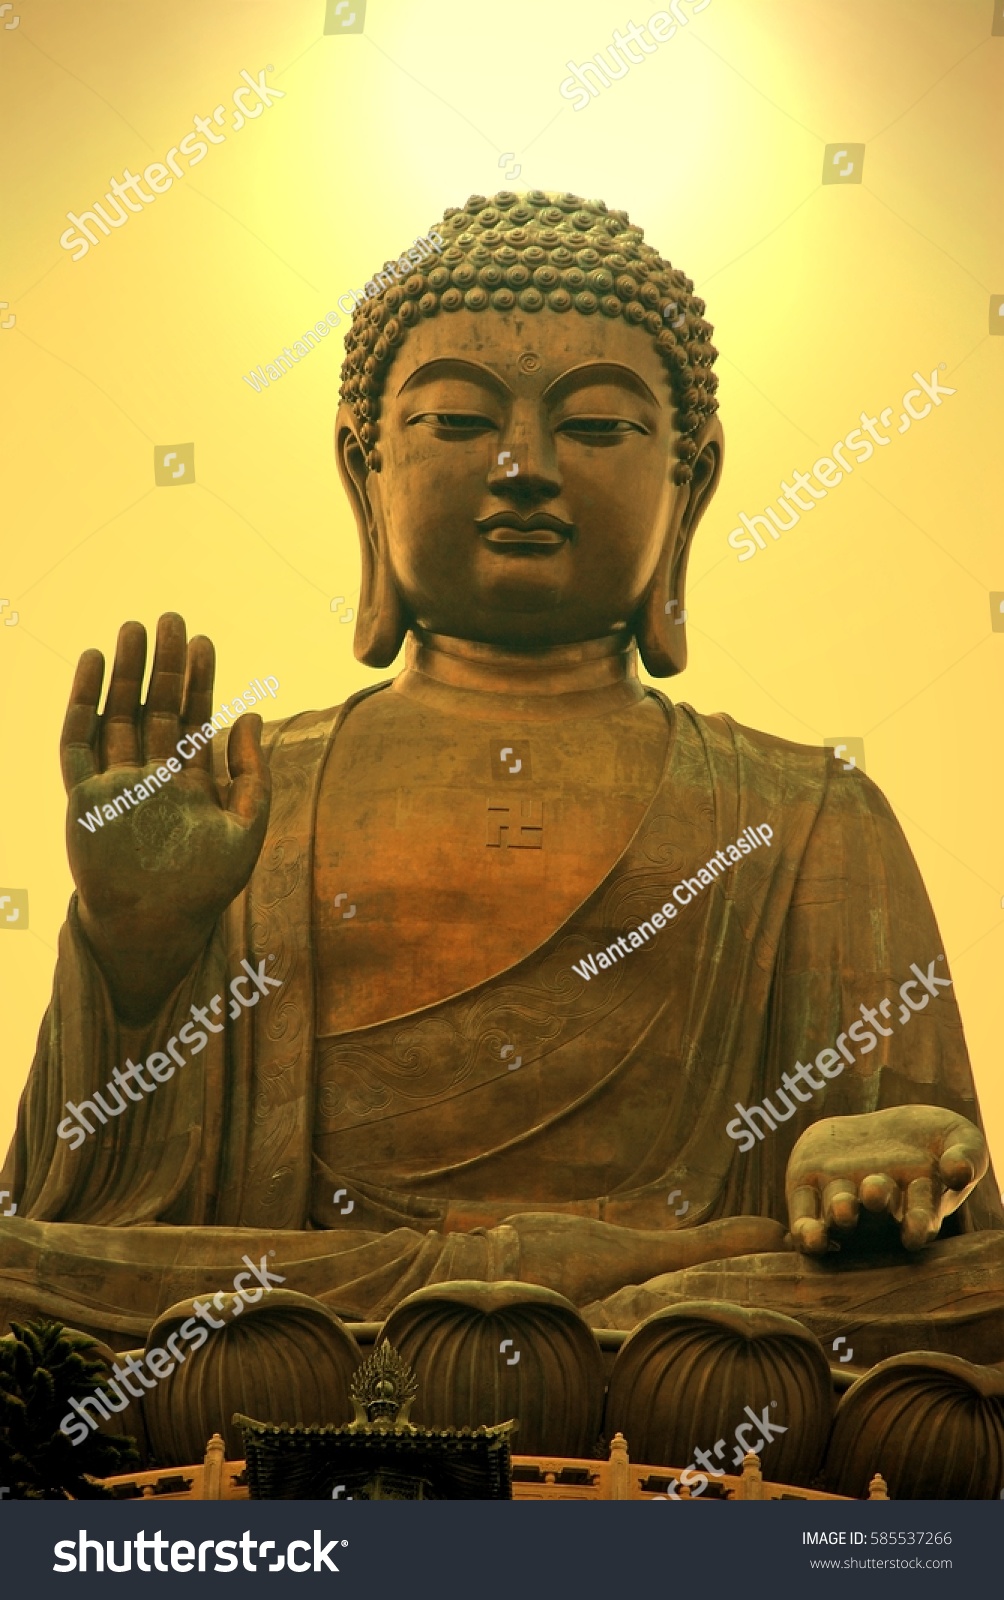 Tian Tan Buddha Giant Buddha Statue Stock Photo 585537266 | Shutterstock